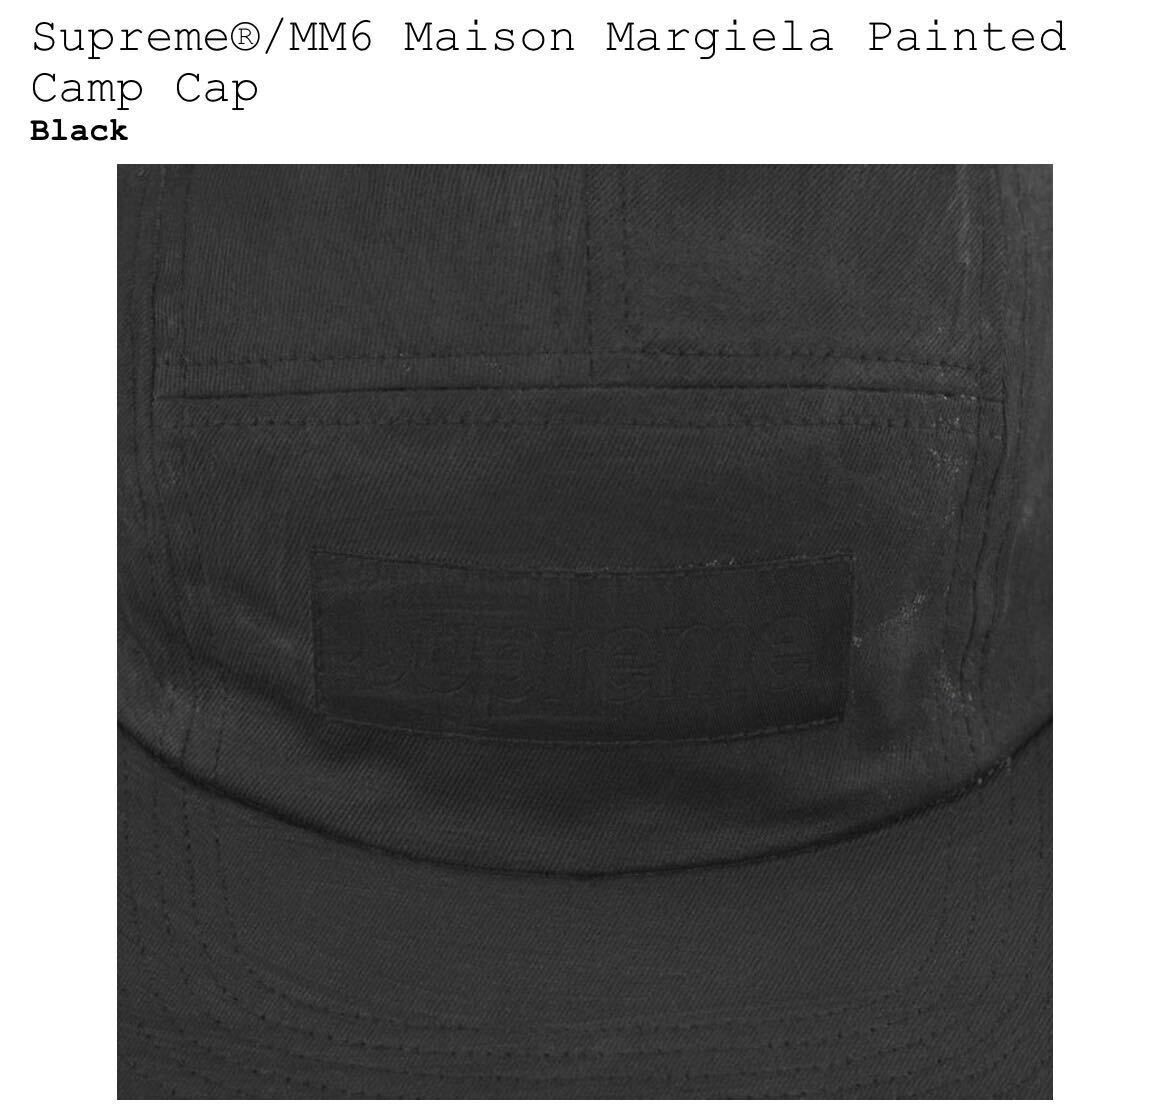 新品 Supreme MM6 Maison Margiela Painted Camp Cap / シュプリーム マルジェラ ペインテッド キャンプ キャップ 送料無料 即納_画像3